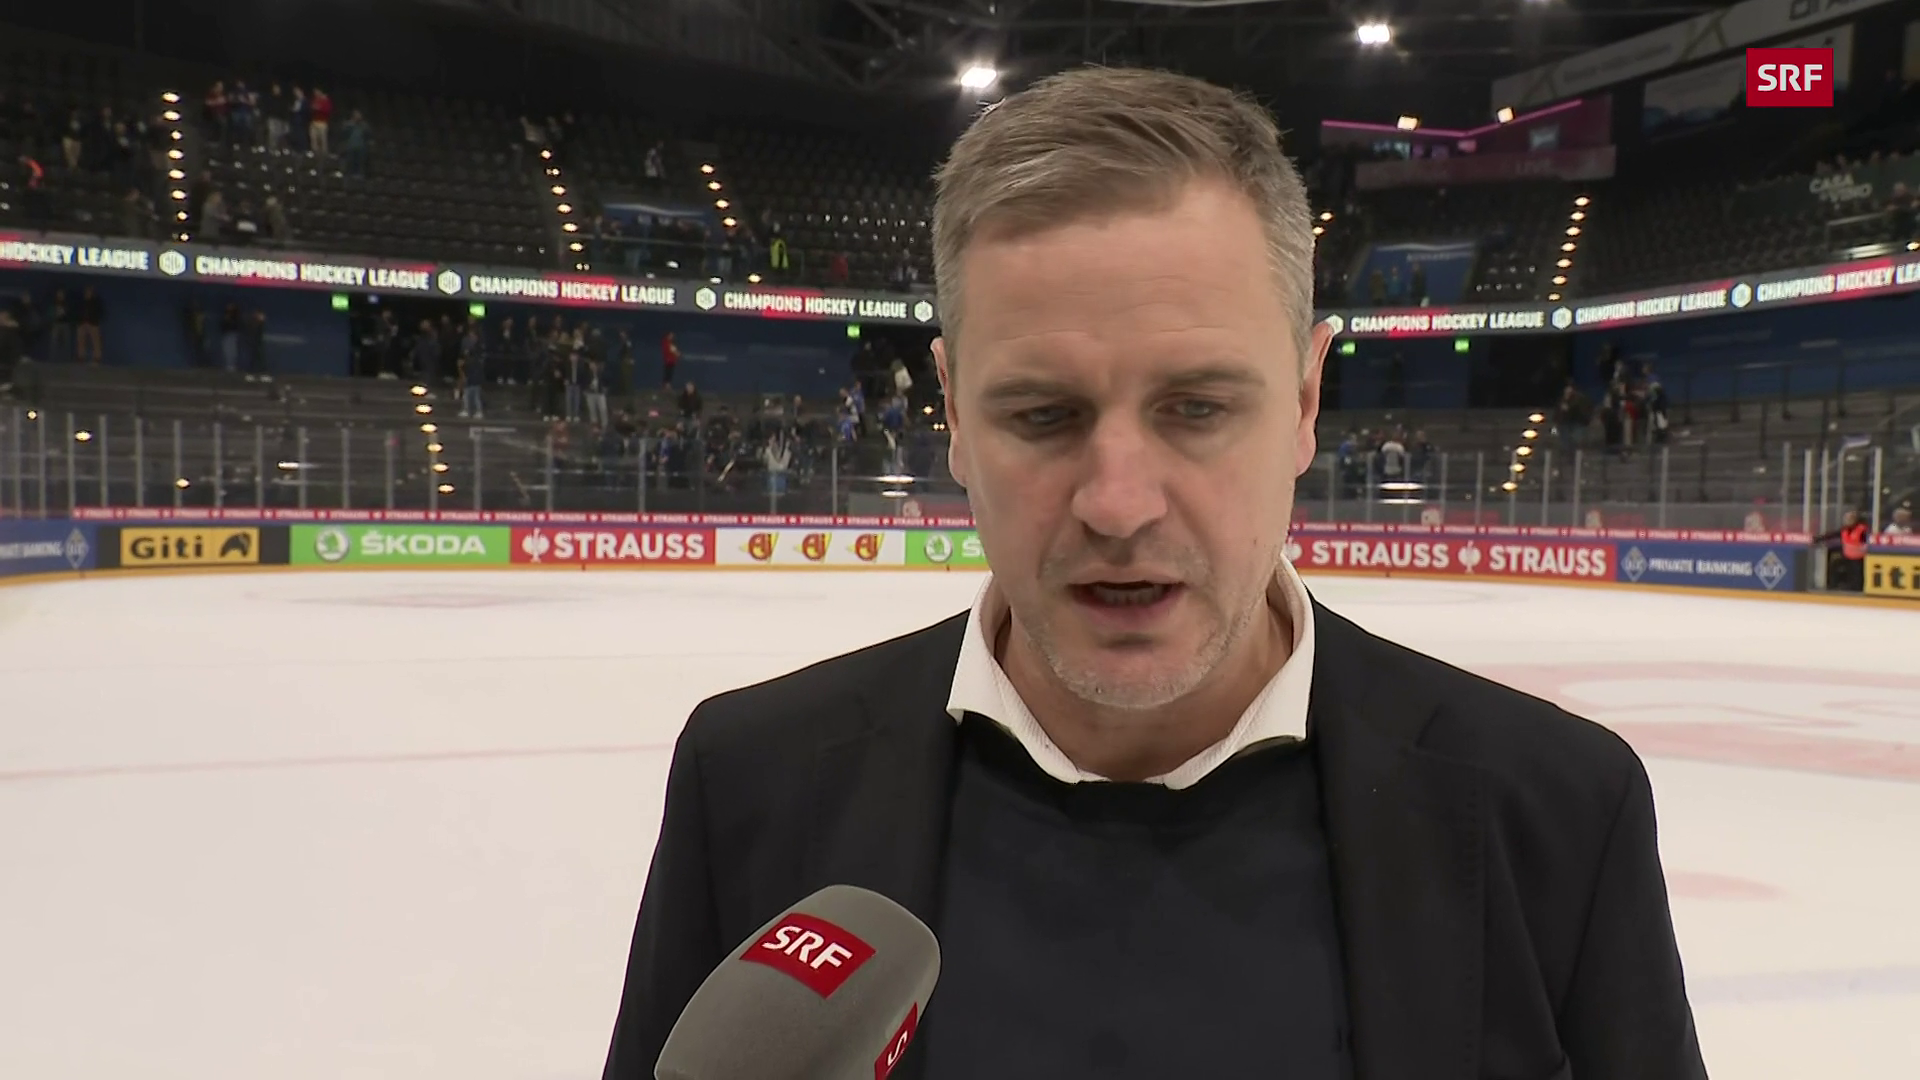 Champions Hockey League - Trotz starker Leistung Zug verpasst Final und verliert Hofmann - Sport